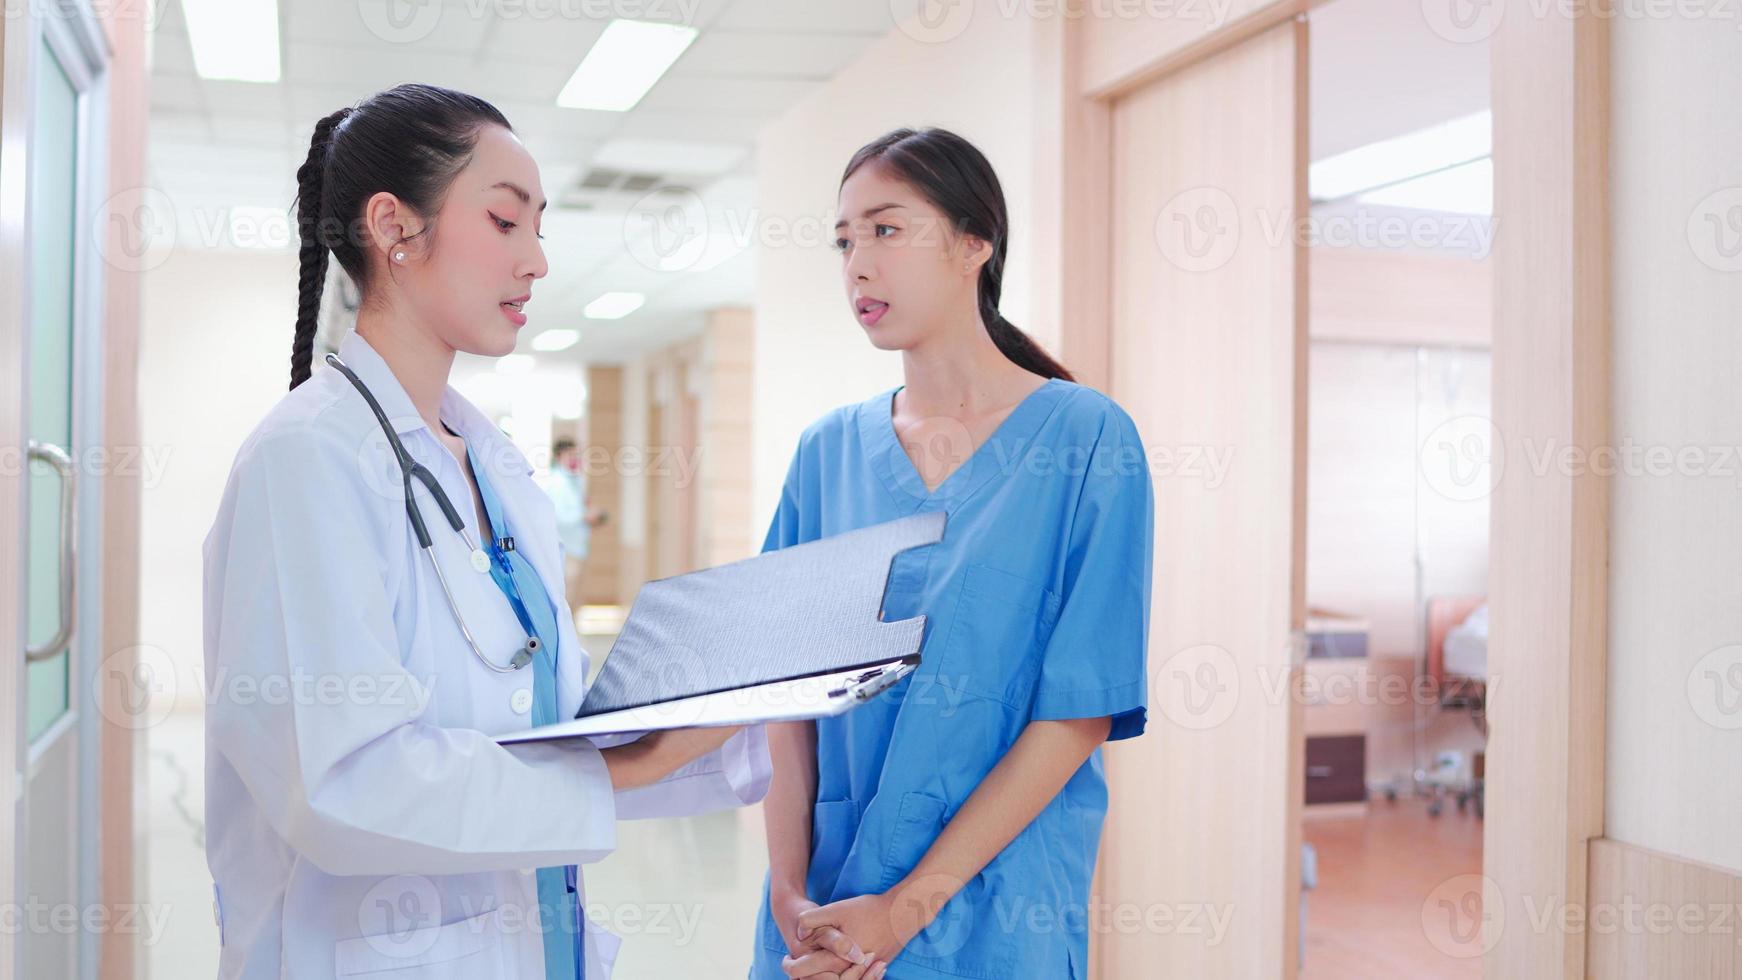 Professionelle, asiatische junge Ärztin, Personal in Uniform, das im Krankenhauskorridor steht. zwei kollegen diskutieren, arbeiten zusammen mit dem medizinischen berichtsklemmbrett auf dem klinikflur. foto